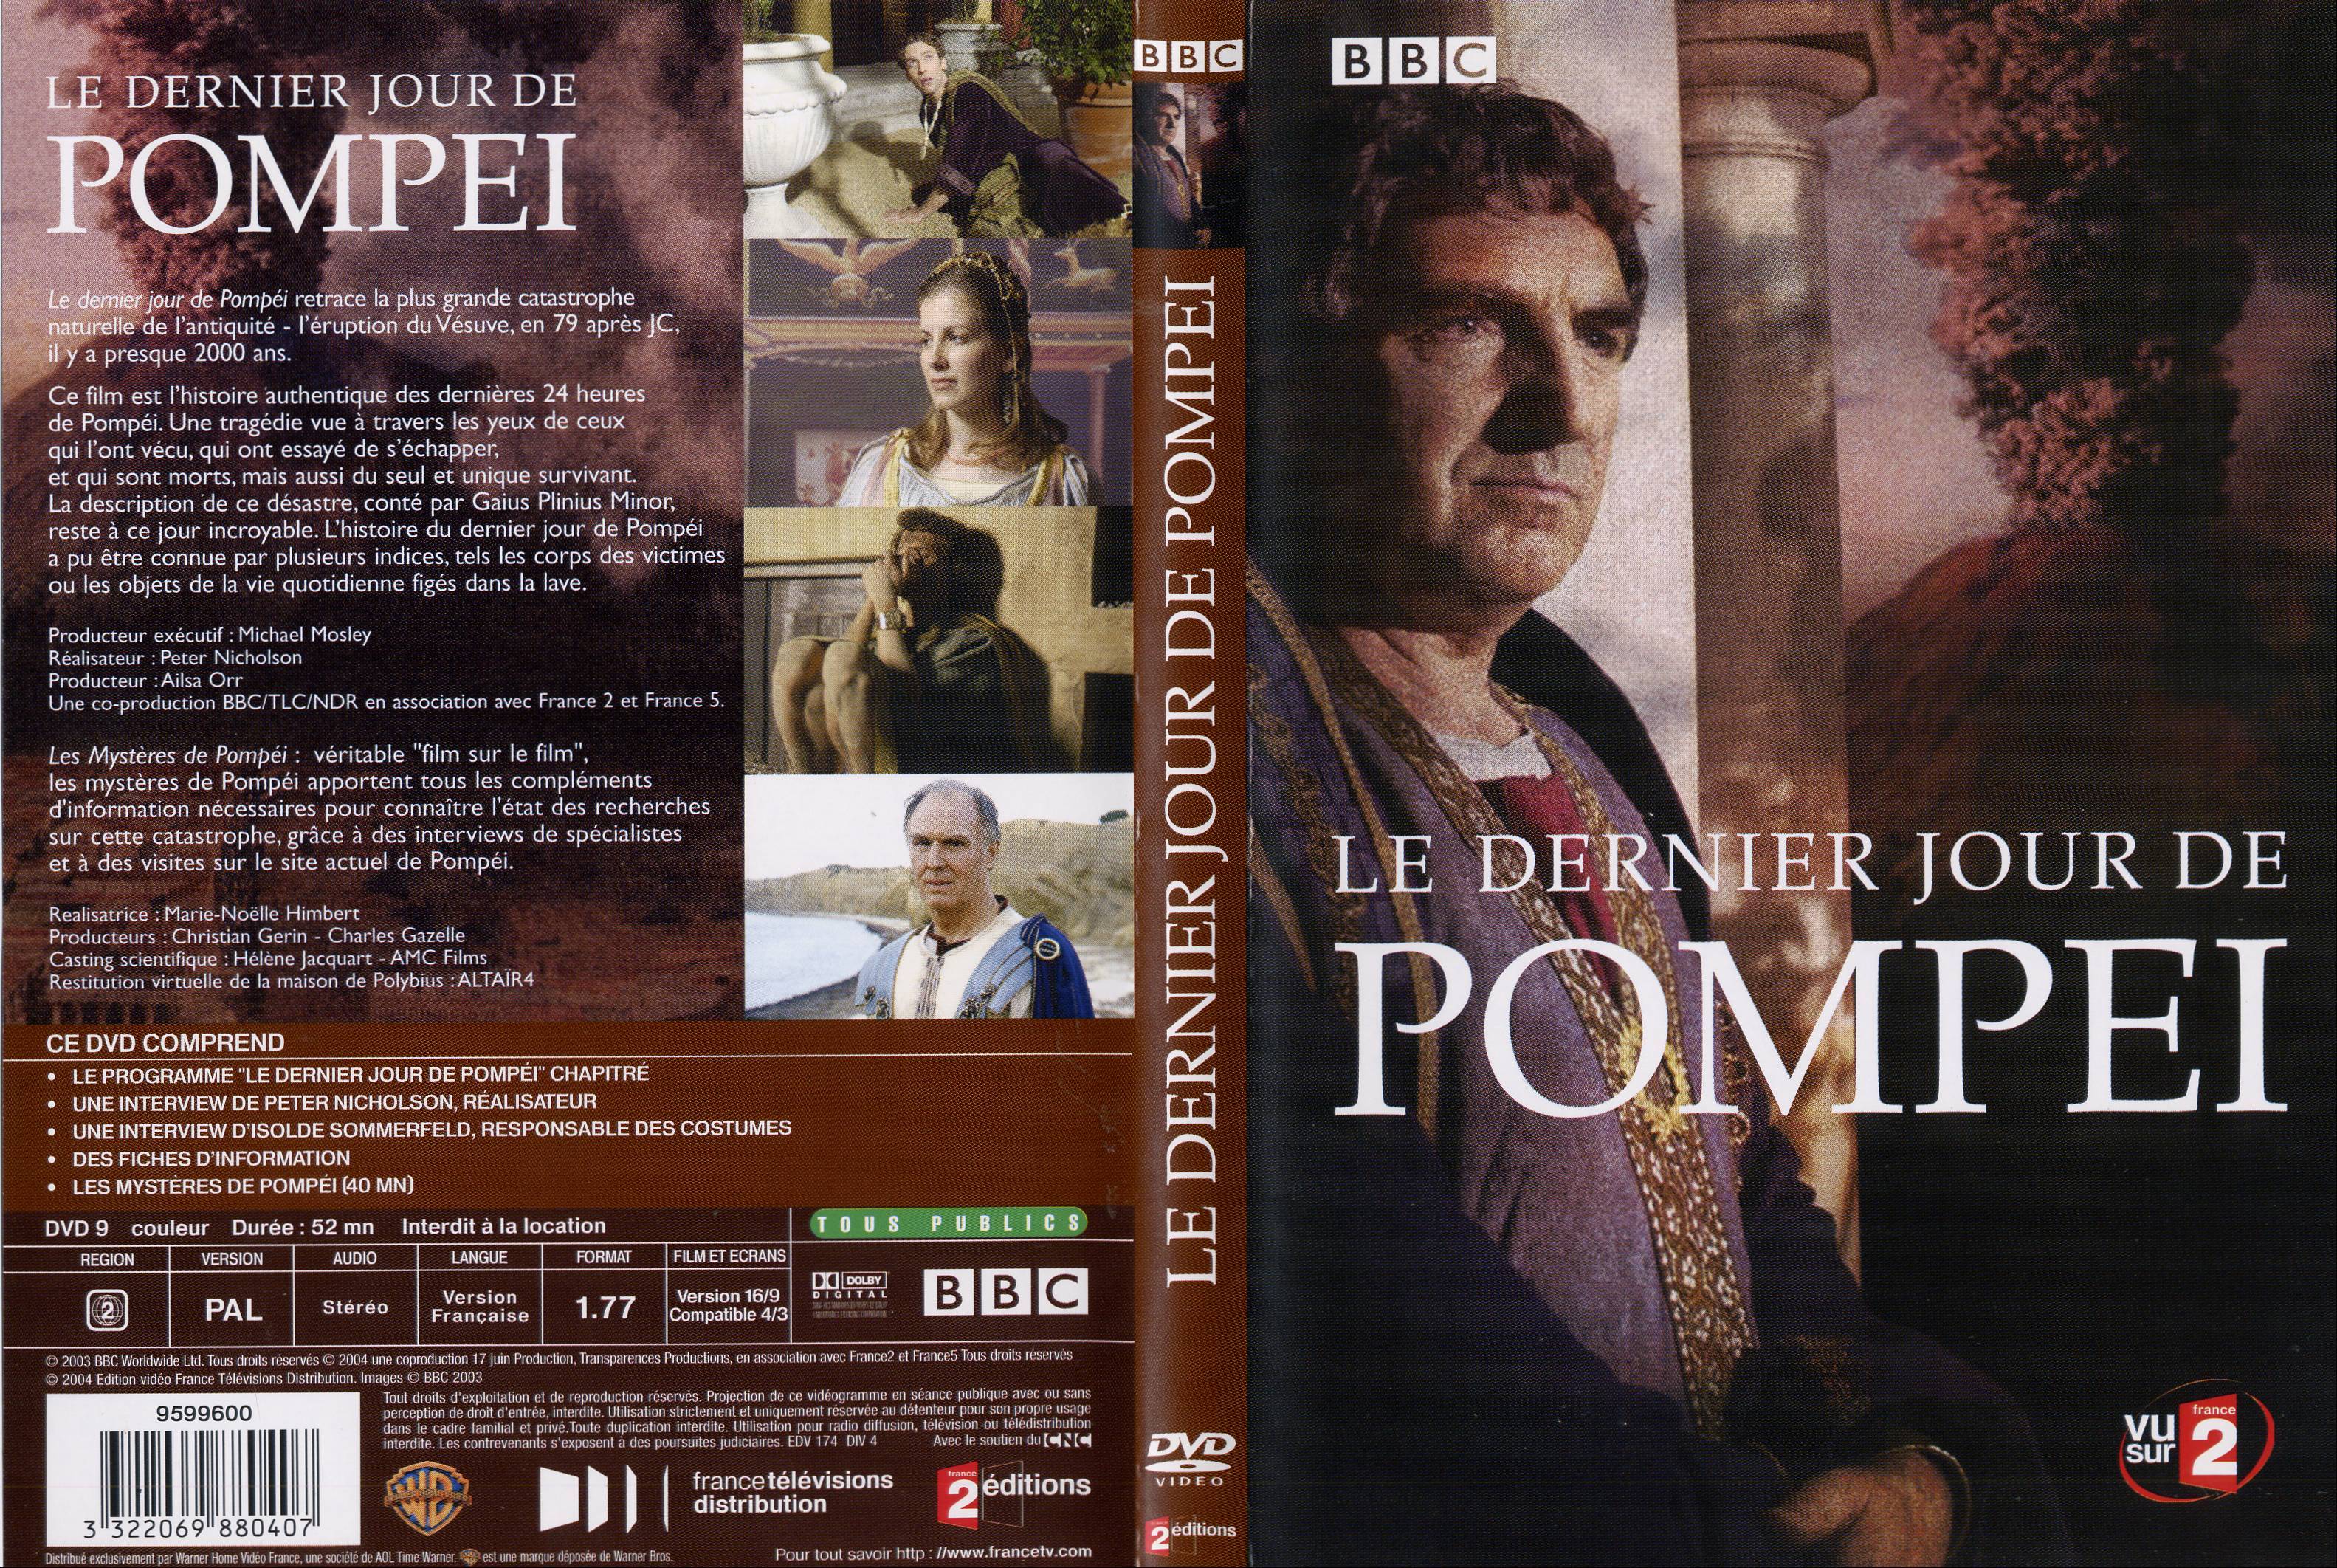 Jaquette DVD Les derniers jours de Pompei (documentaire)